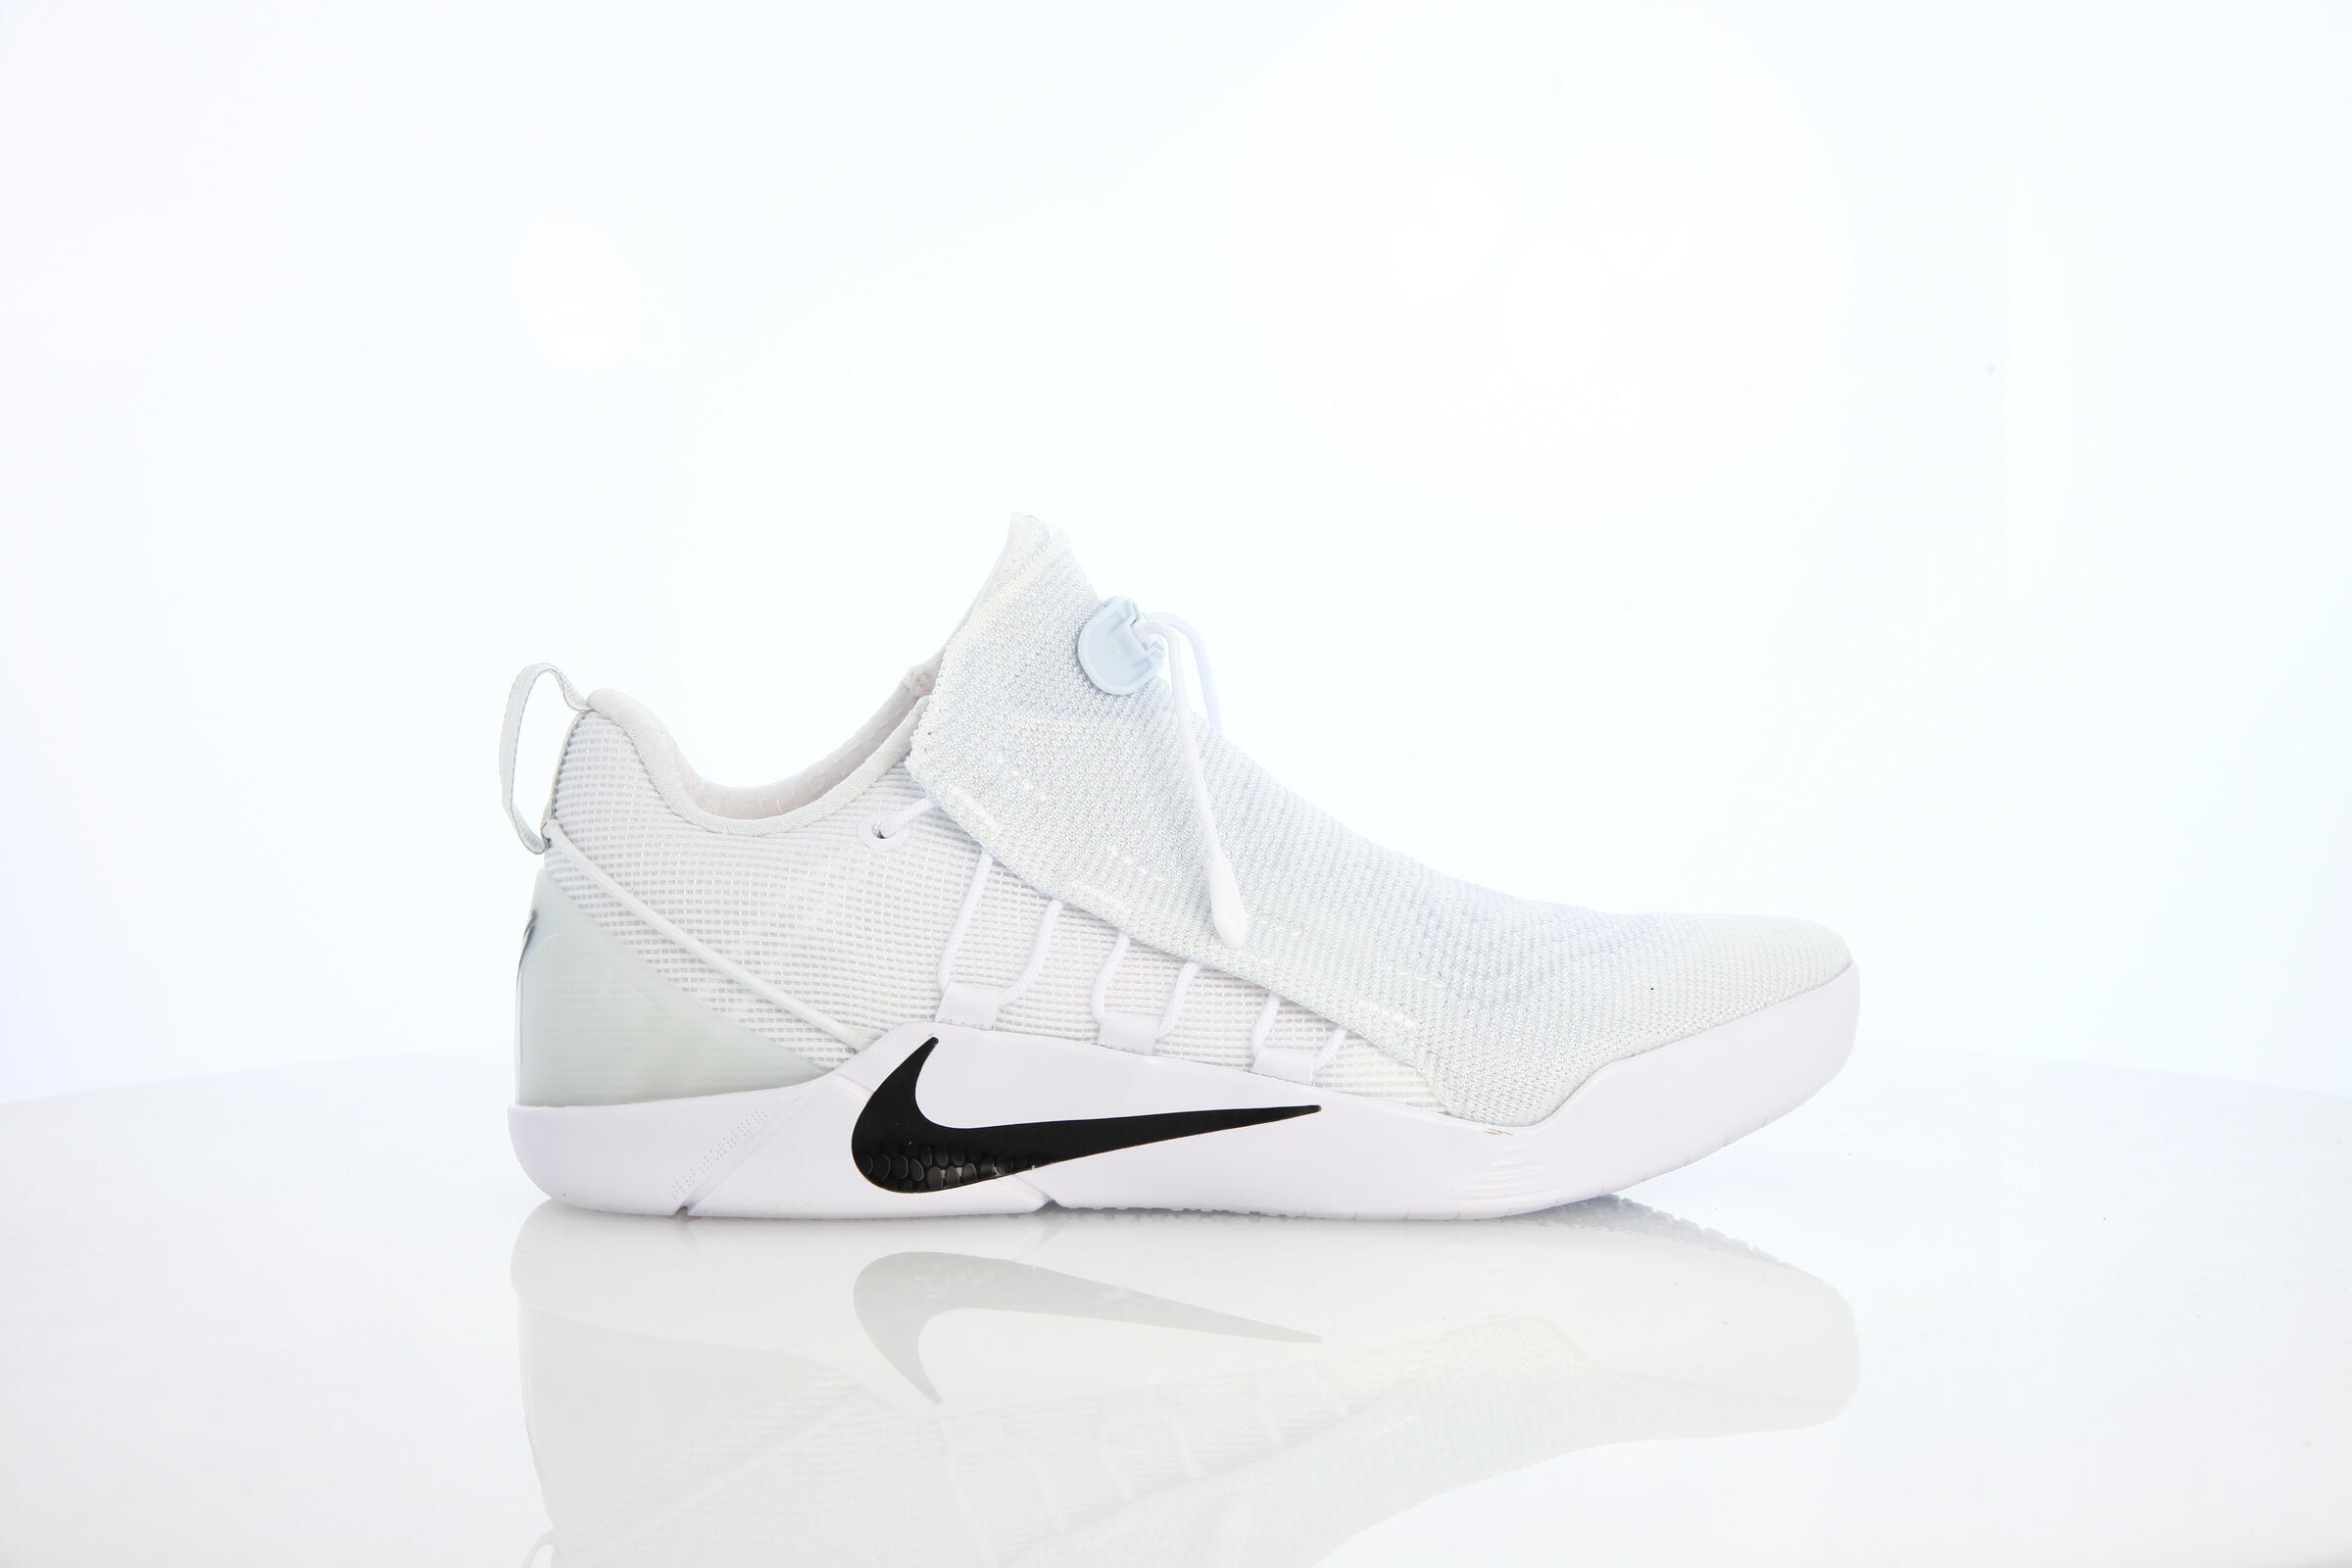 Nike Kobe A.d. Nxt "White"